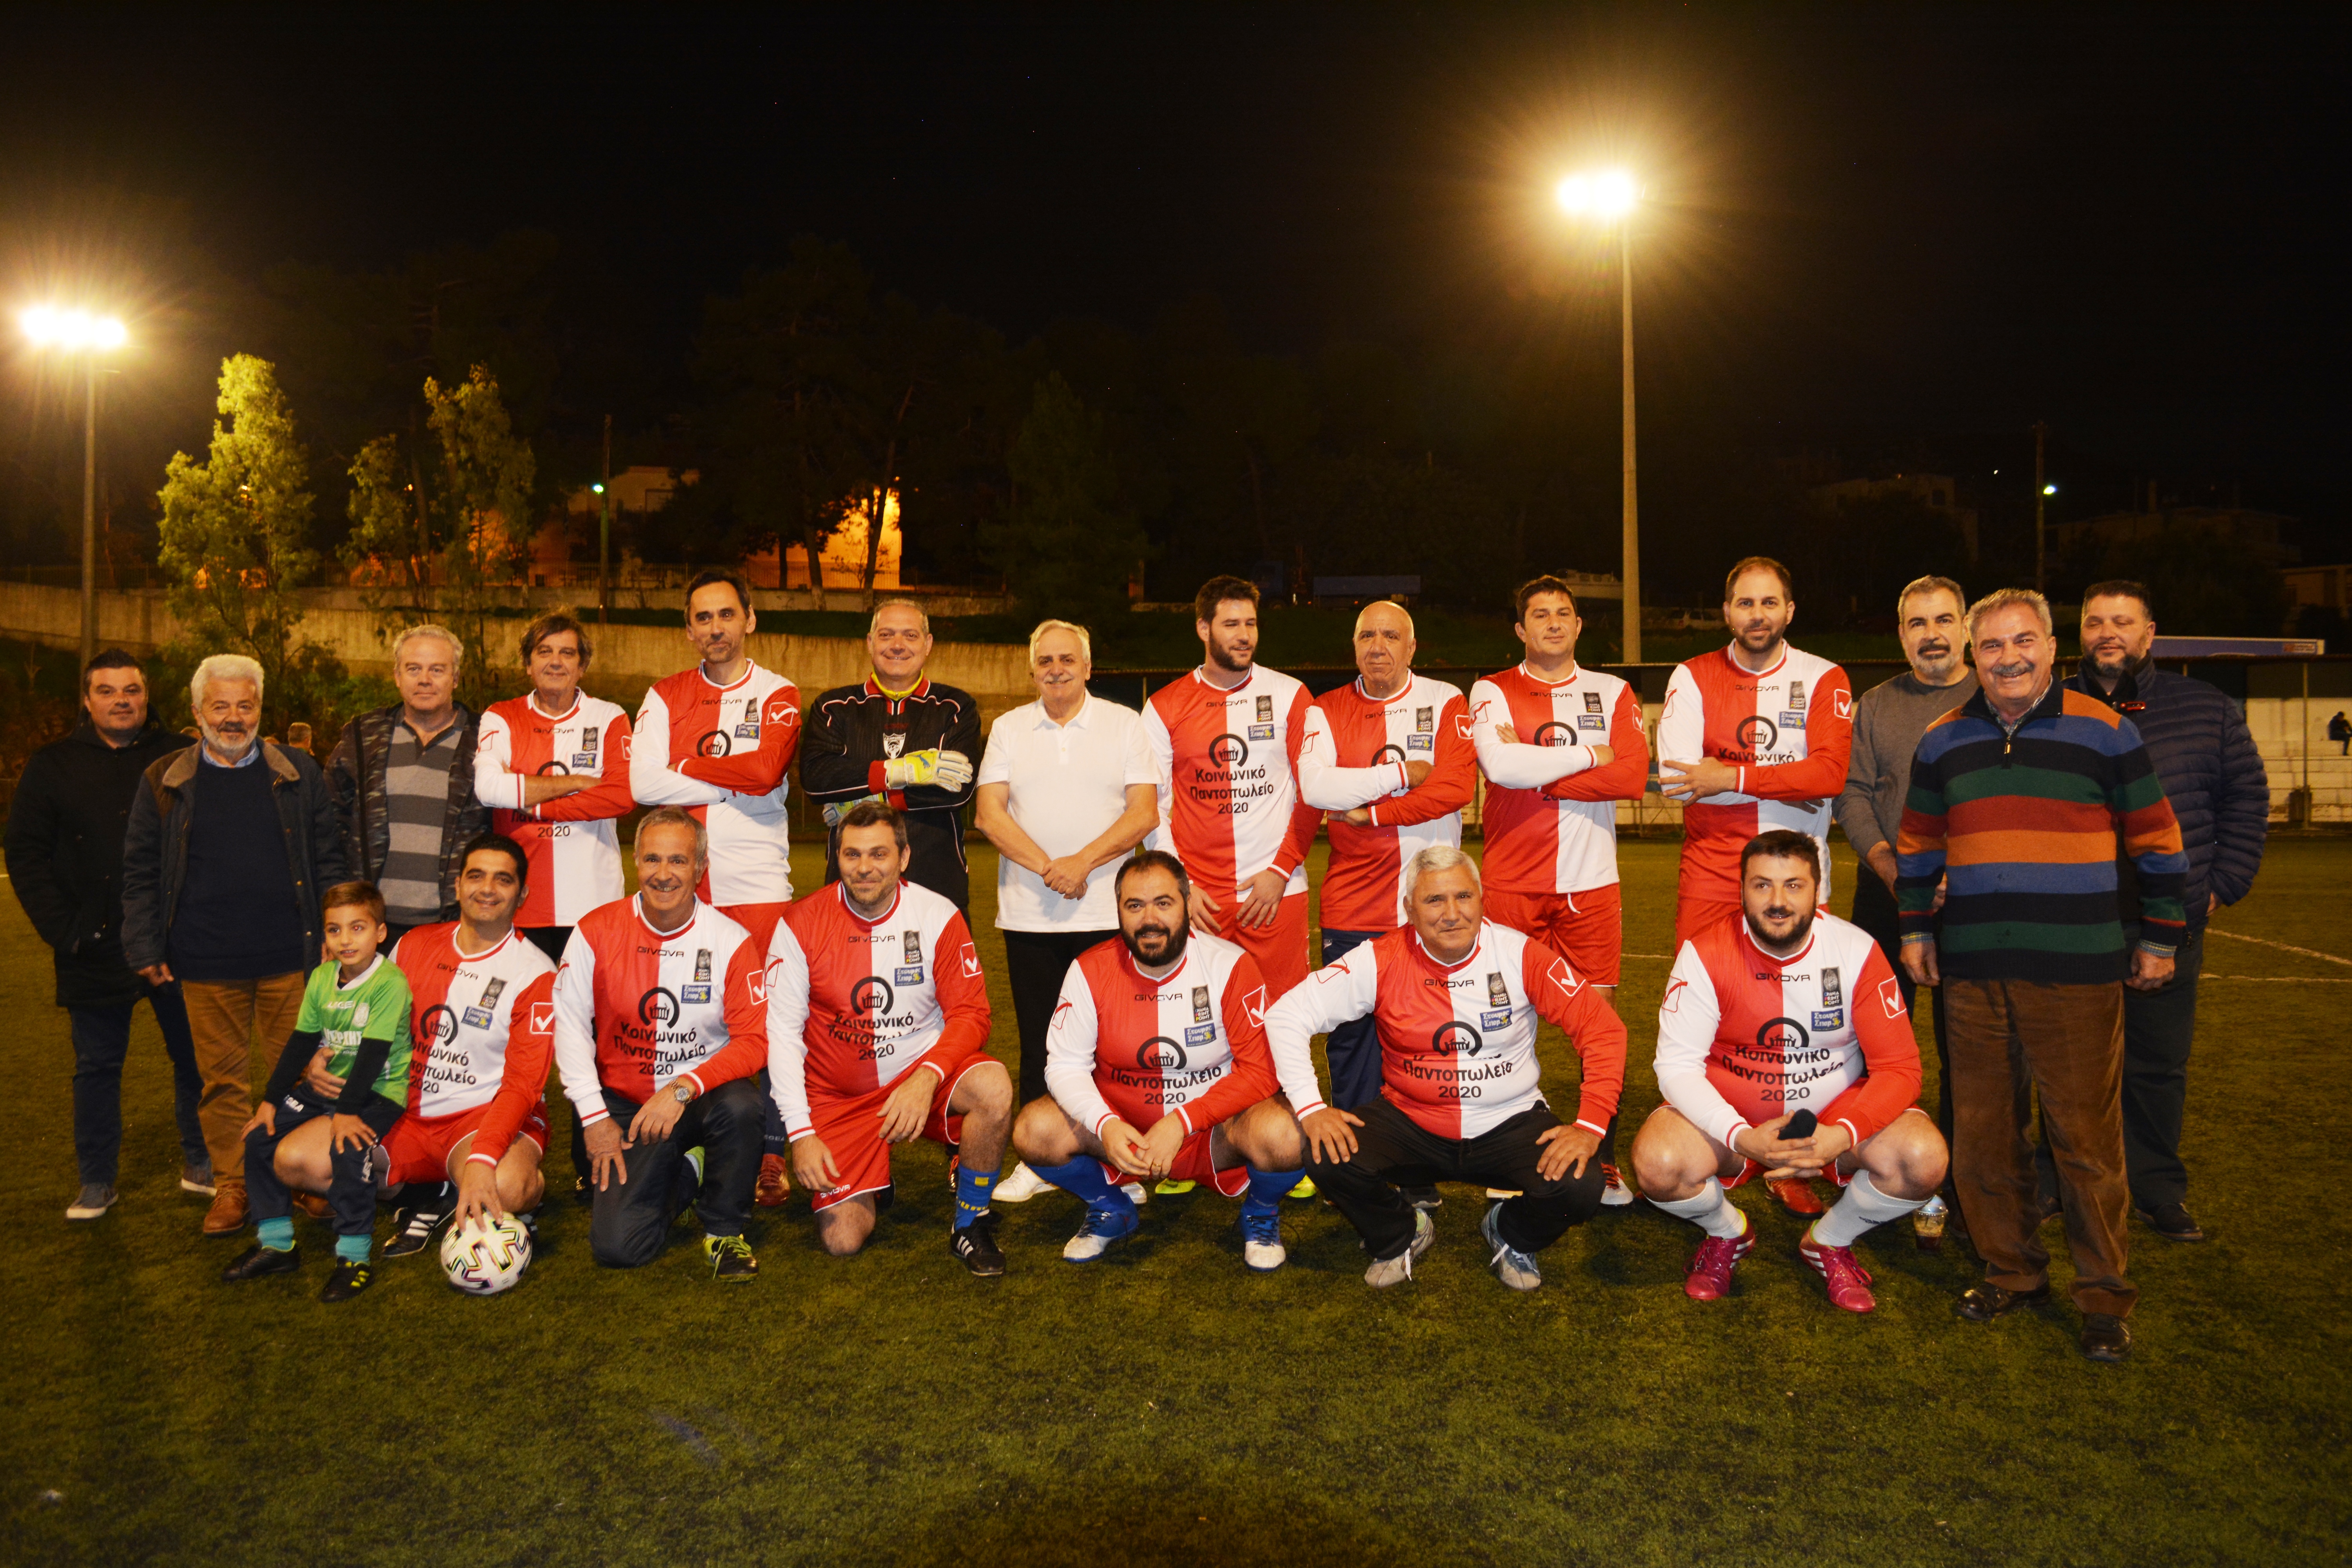 Δημοτικό Συμβούλιο Χανίων – Παλαίμαχοι Χανίων: Τουρνουά ποδοσφαίρου για καλό σκοπό